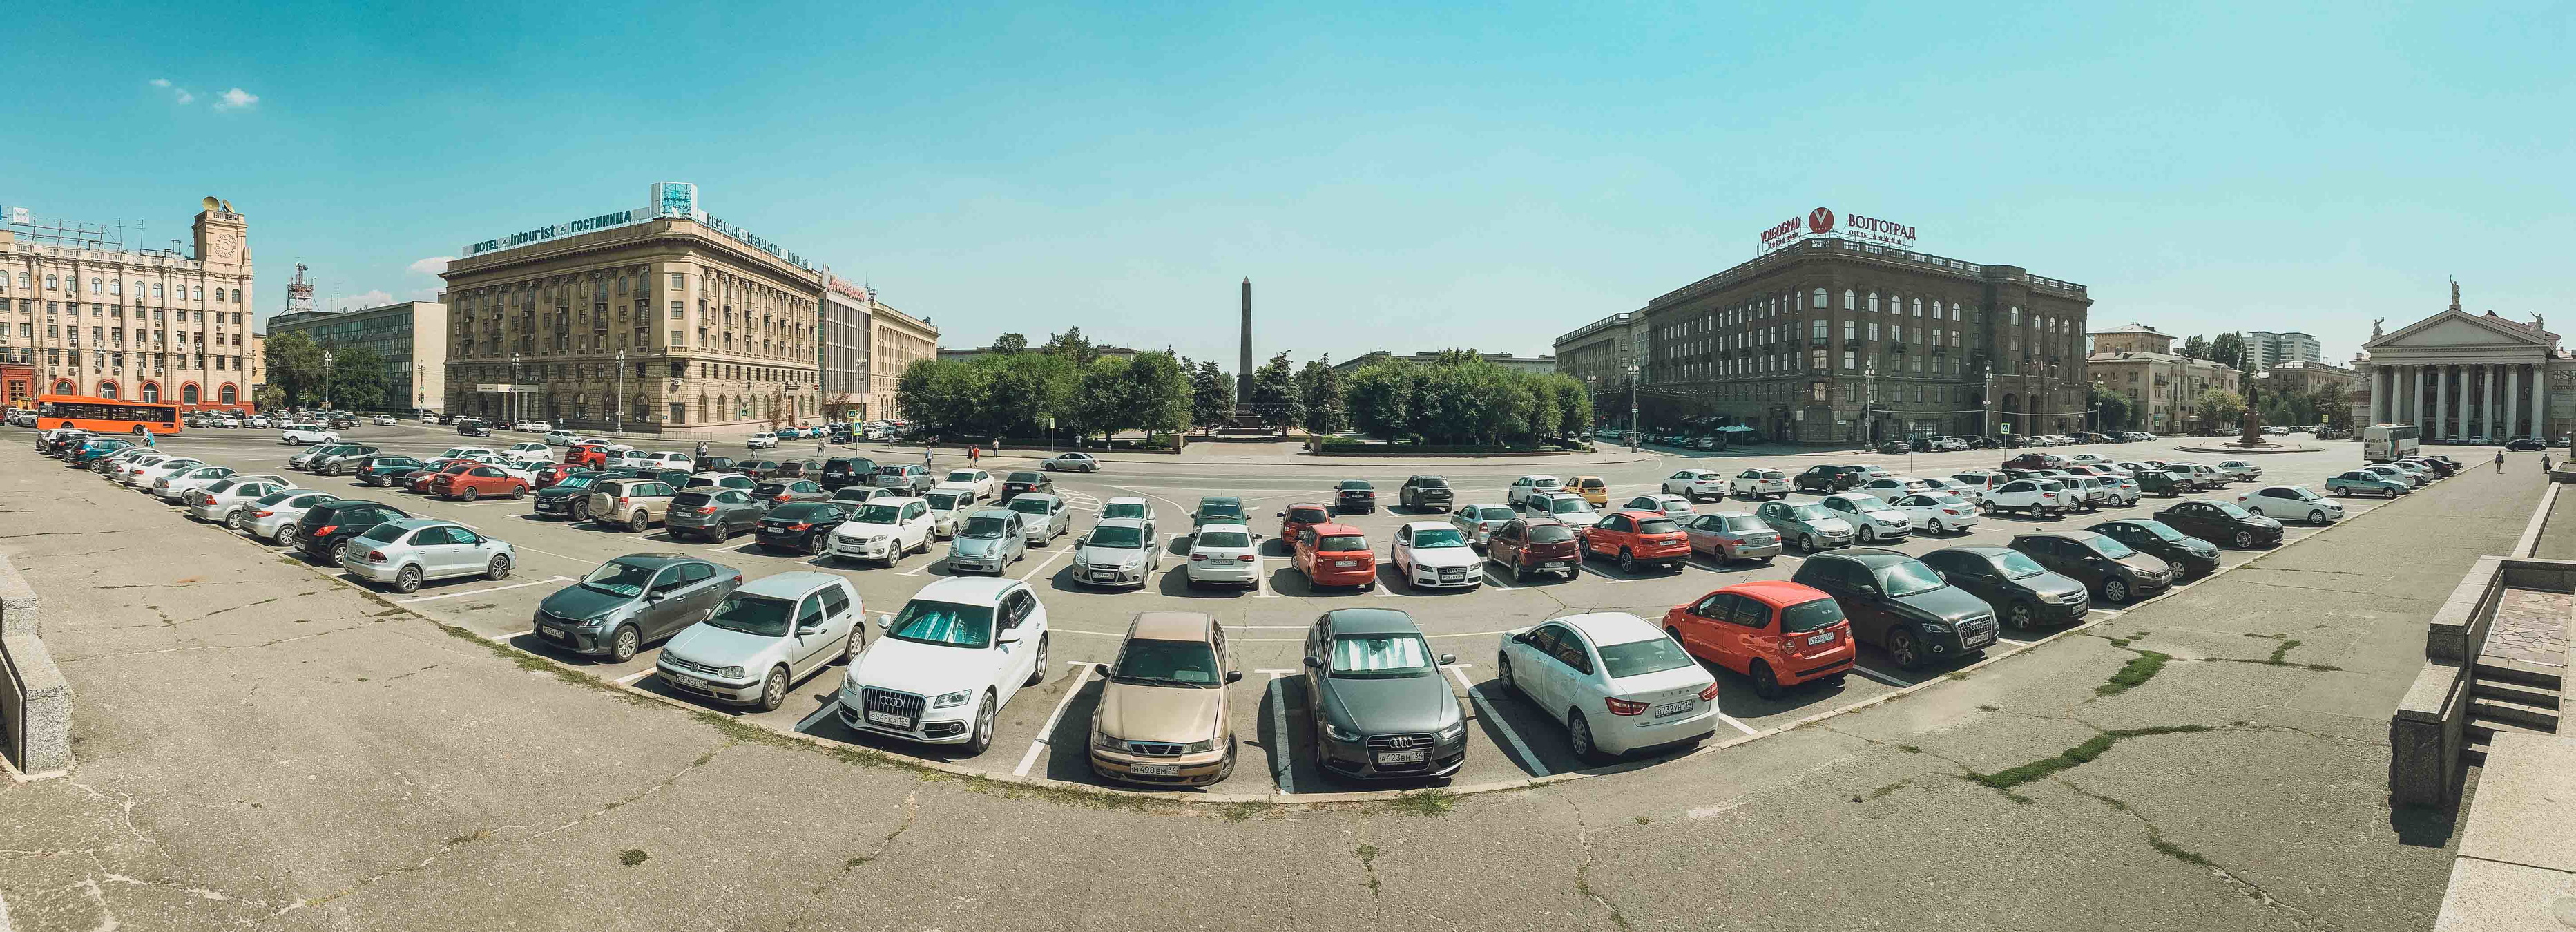 Горожане поспорили о планах на стройку парковки на 1,5 тысячи машин в Кисловодске